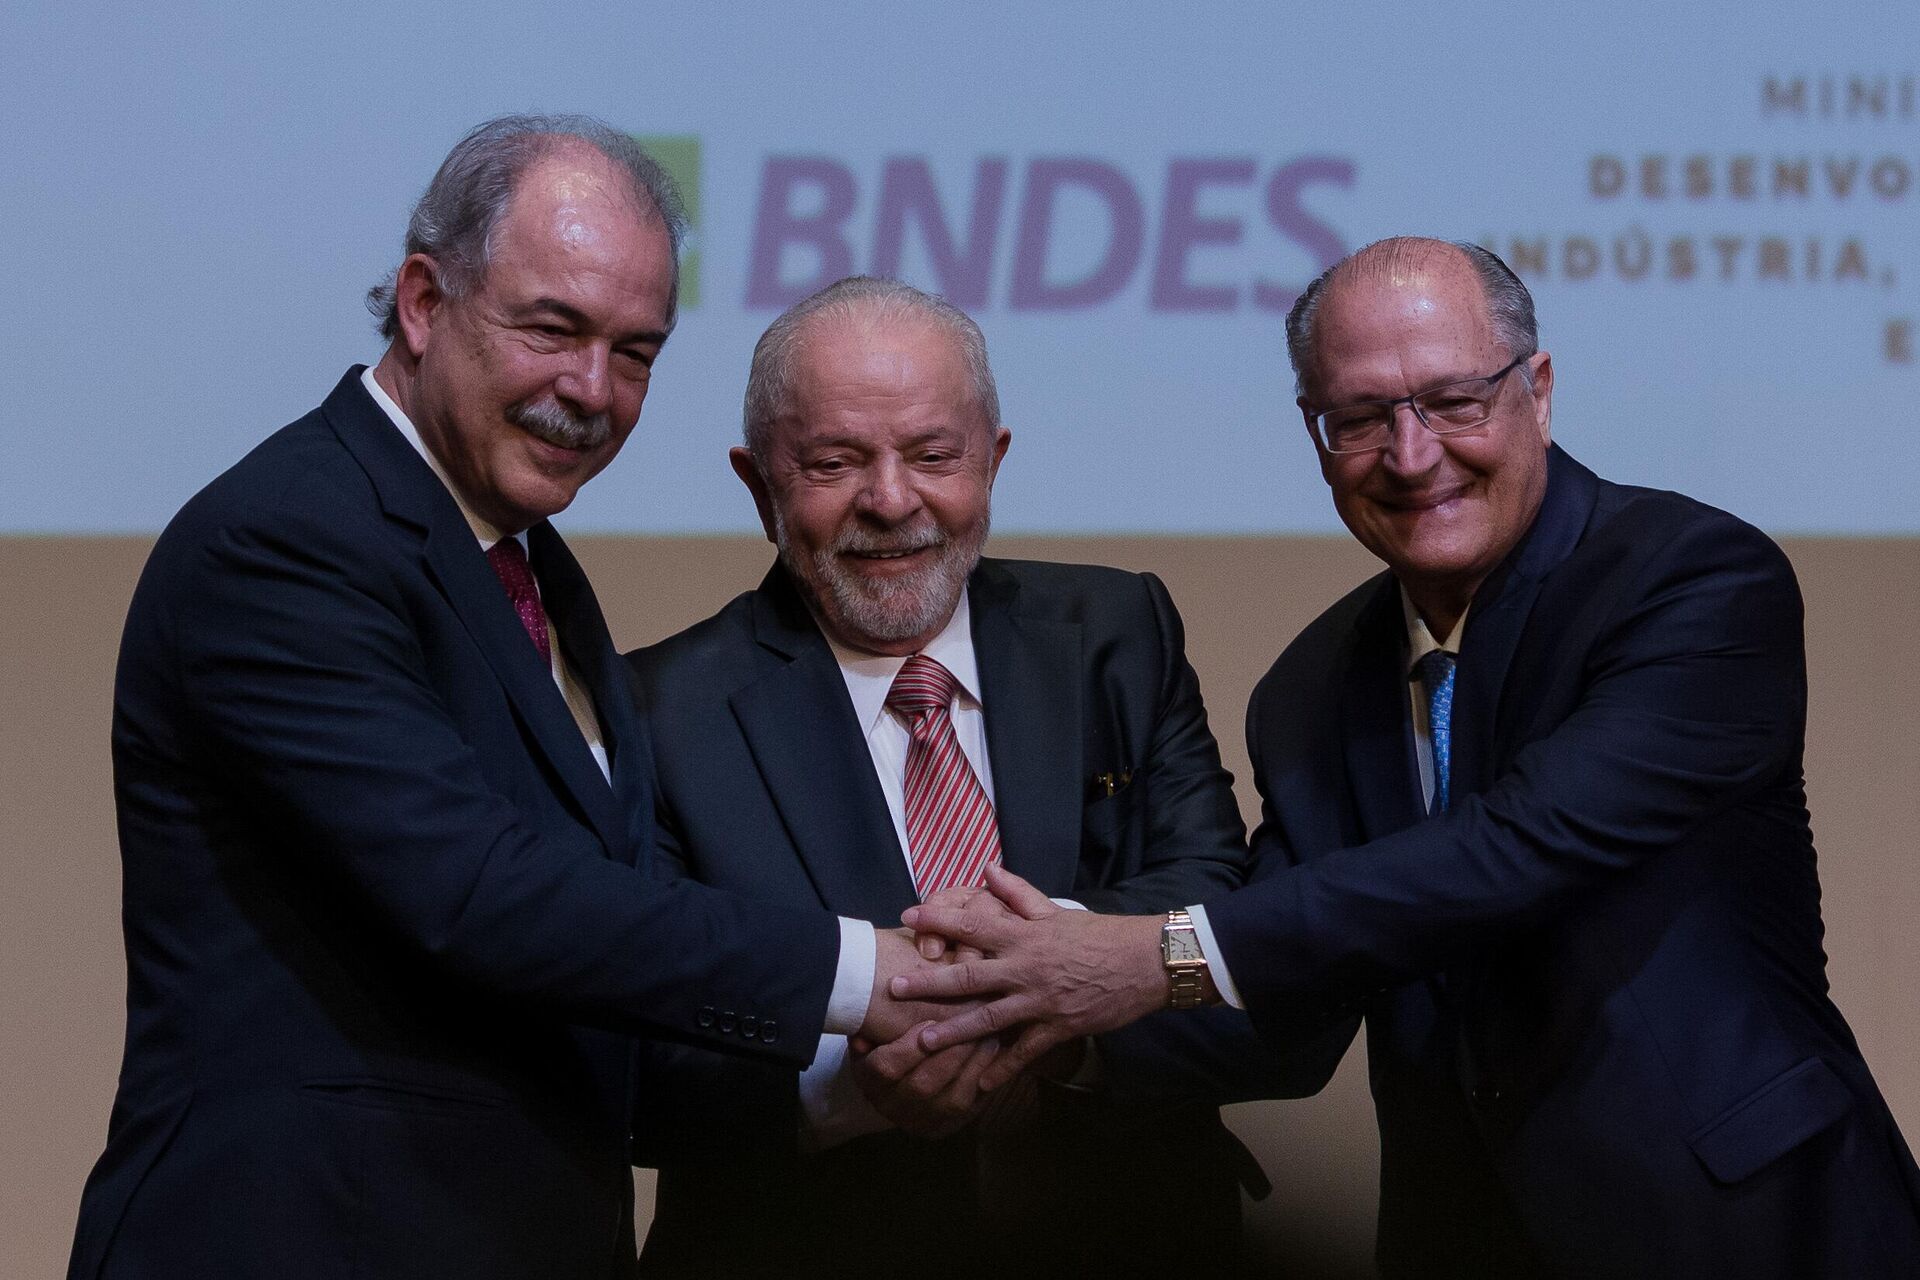 O presidente Luiz Inácio Lula da Silva (PT, ao centro) e o vice-presidente Geraldo Alckmin (PSB, à direita) durante cerimônia de posse de Aloizio Mercadante na presidência do Banco Nacional de Desenvolvimento Econômico e Social (BNDES), no Rio de Janeiro (RJ), em 6 de fevereiro de 2023 - Sputnik Brasil, 1920, 06.02.2023